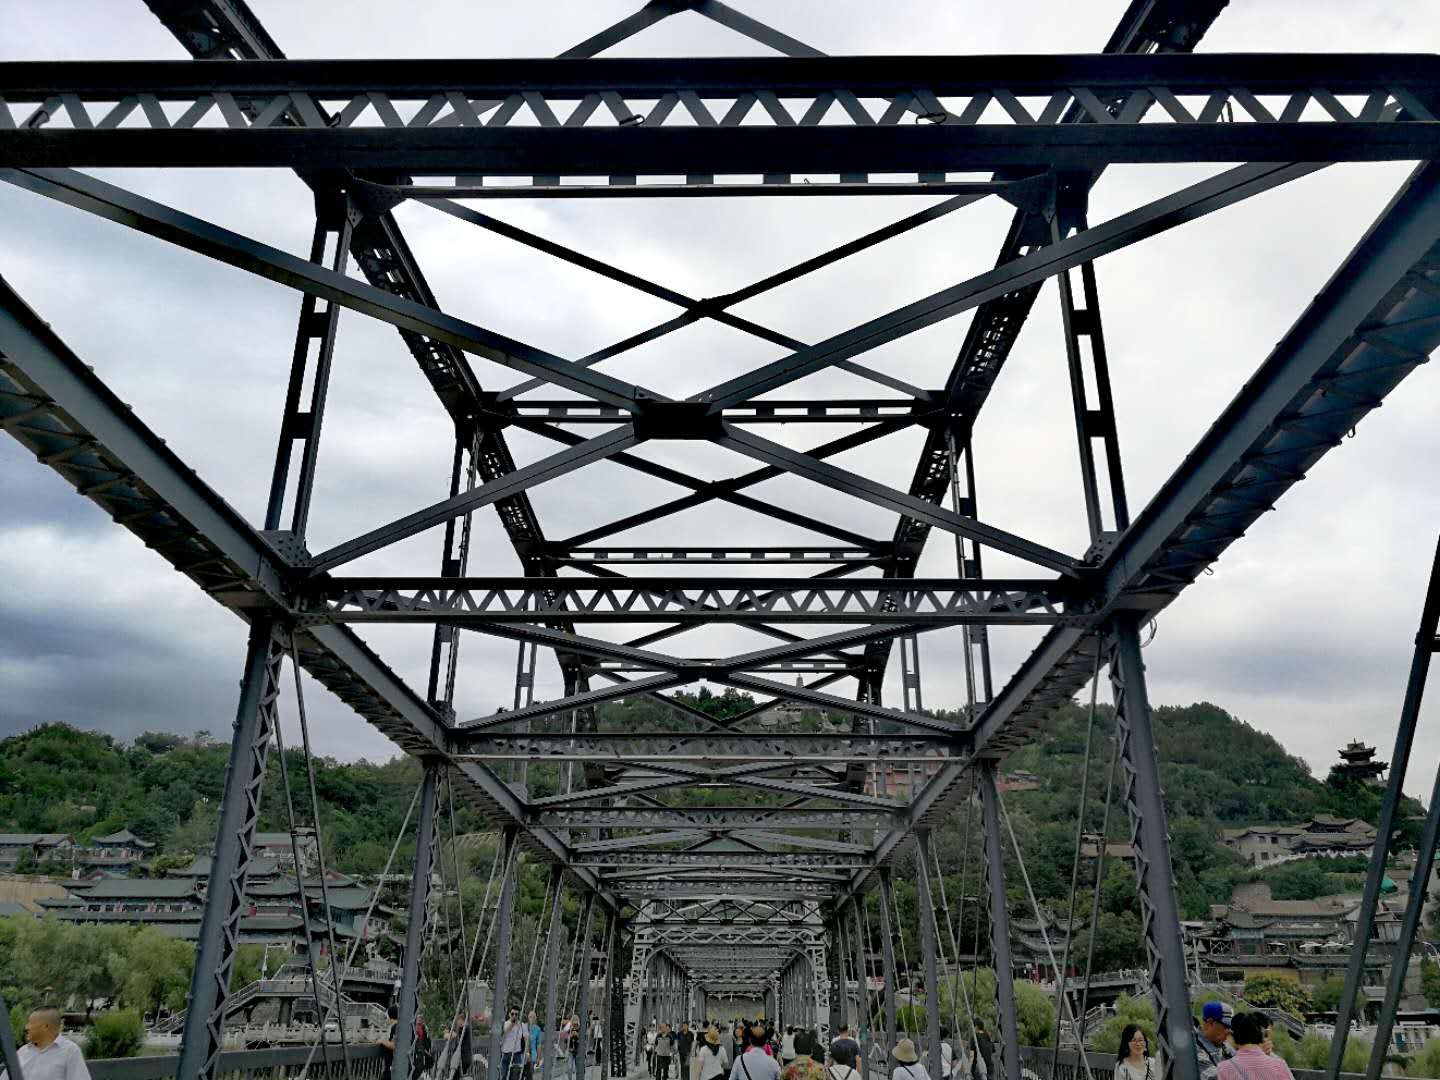 兰州黄河中山铁桥(黄河中山铁桥 雄姿长达百年 依然壮观 是兰州一道靓丽风景线)